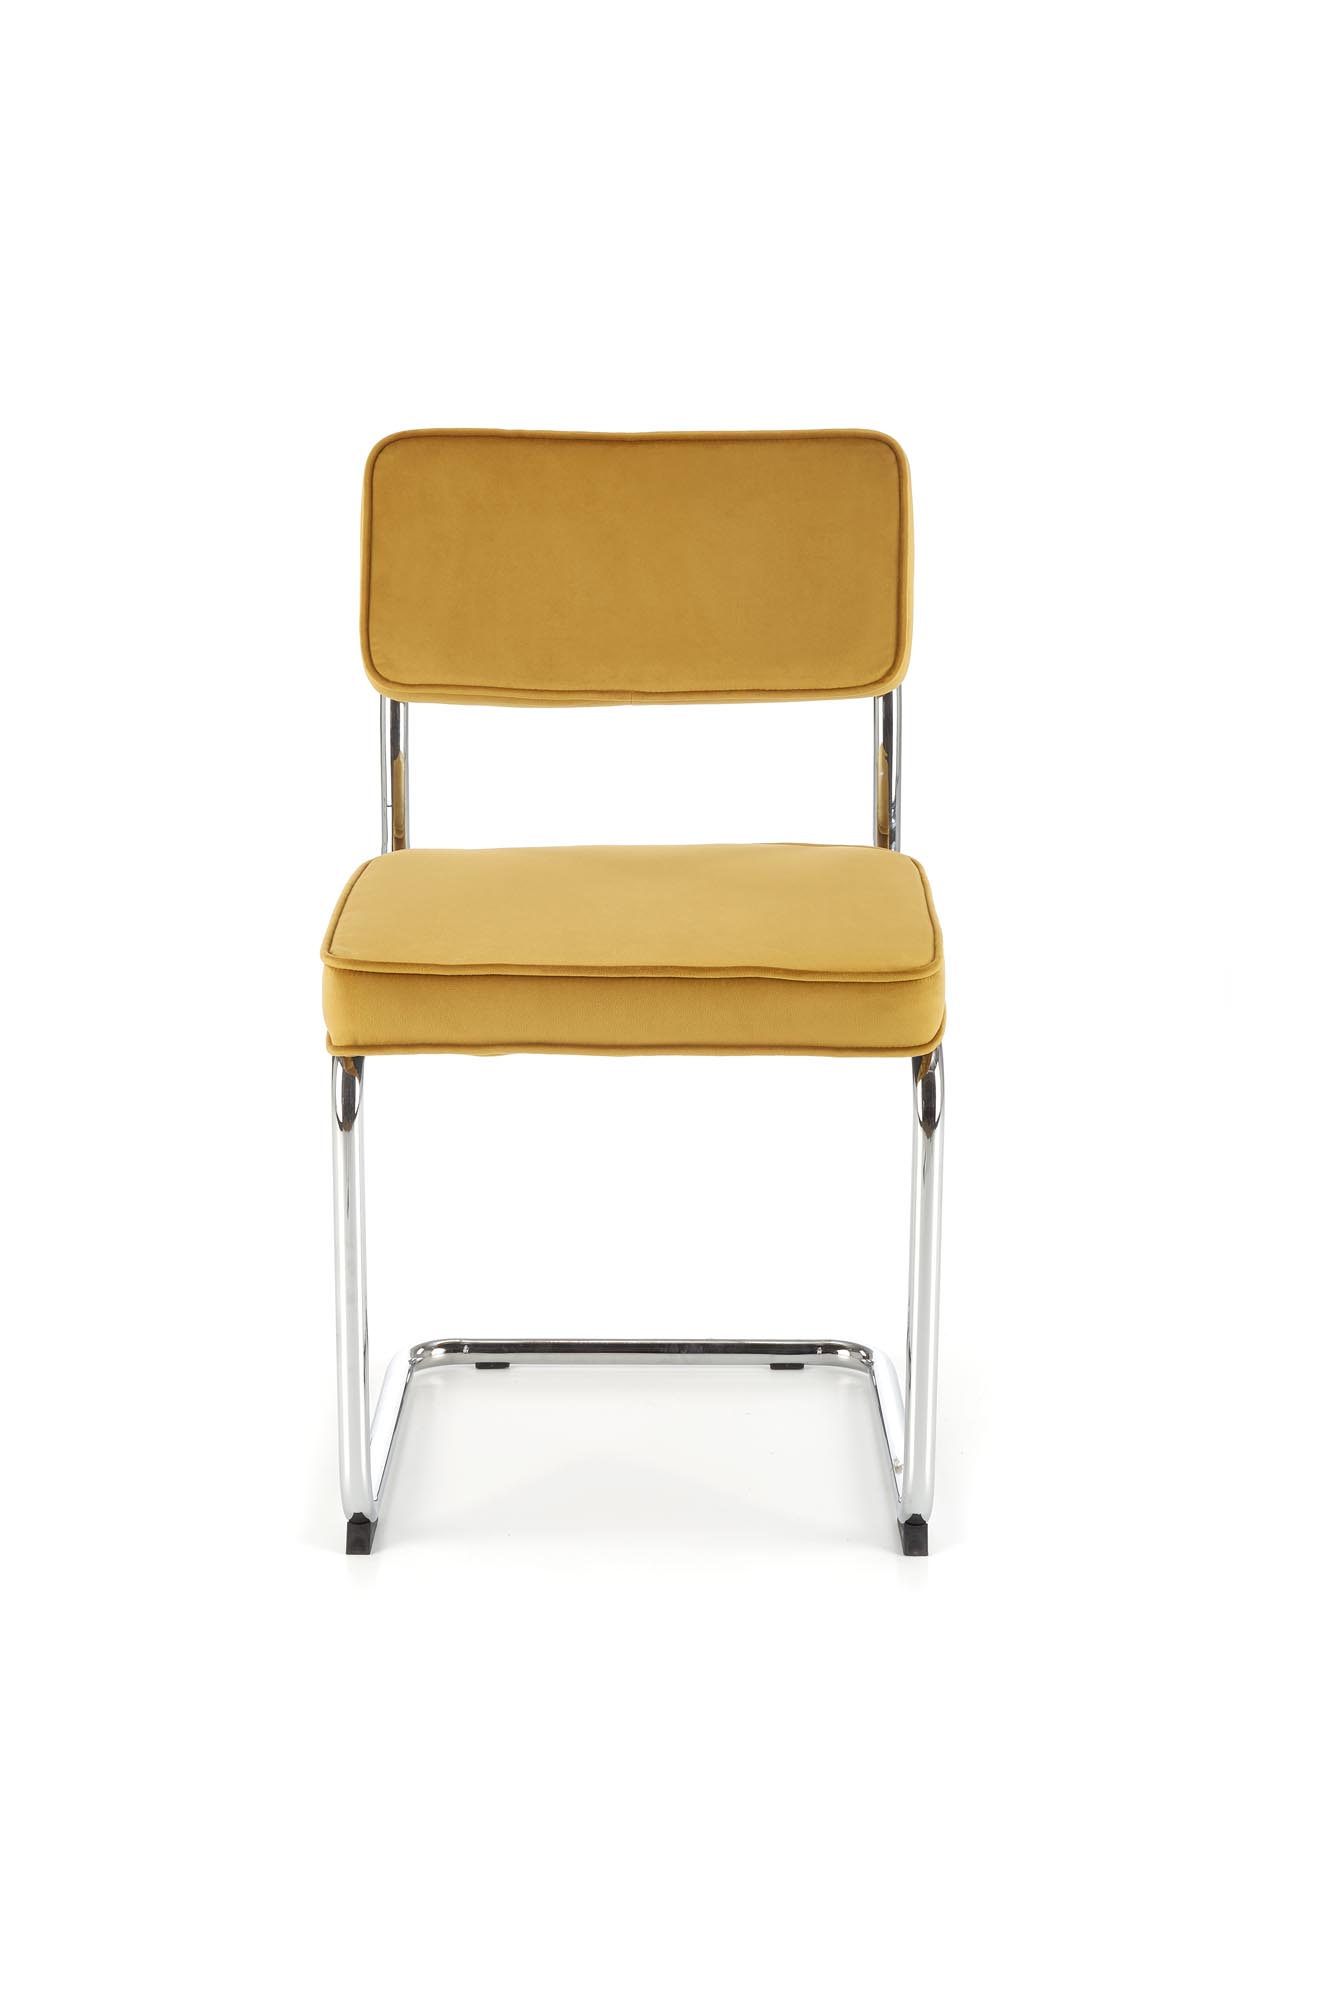 K510 Židle hořčice krzeszlo ocelové k510 - hořčice